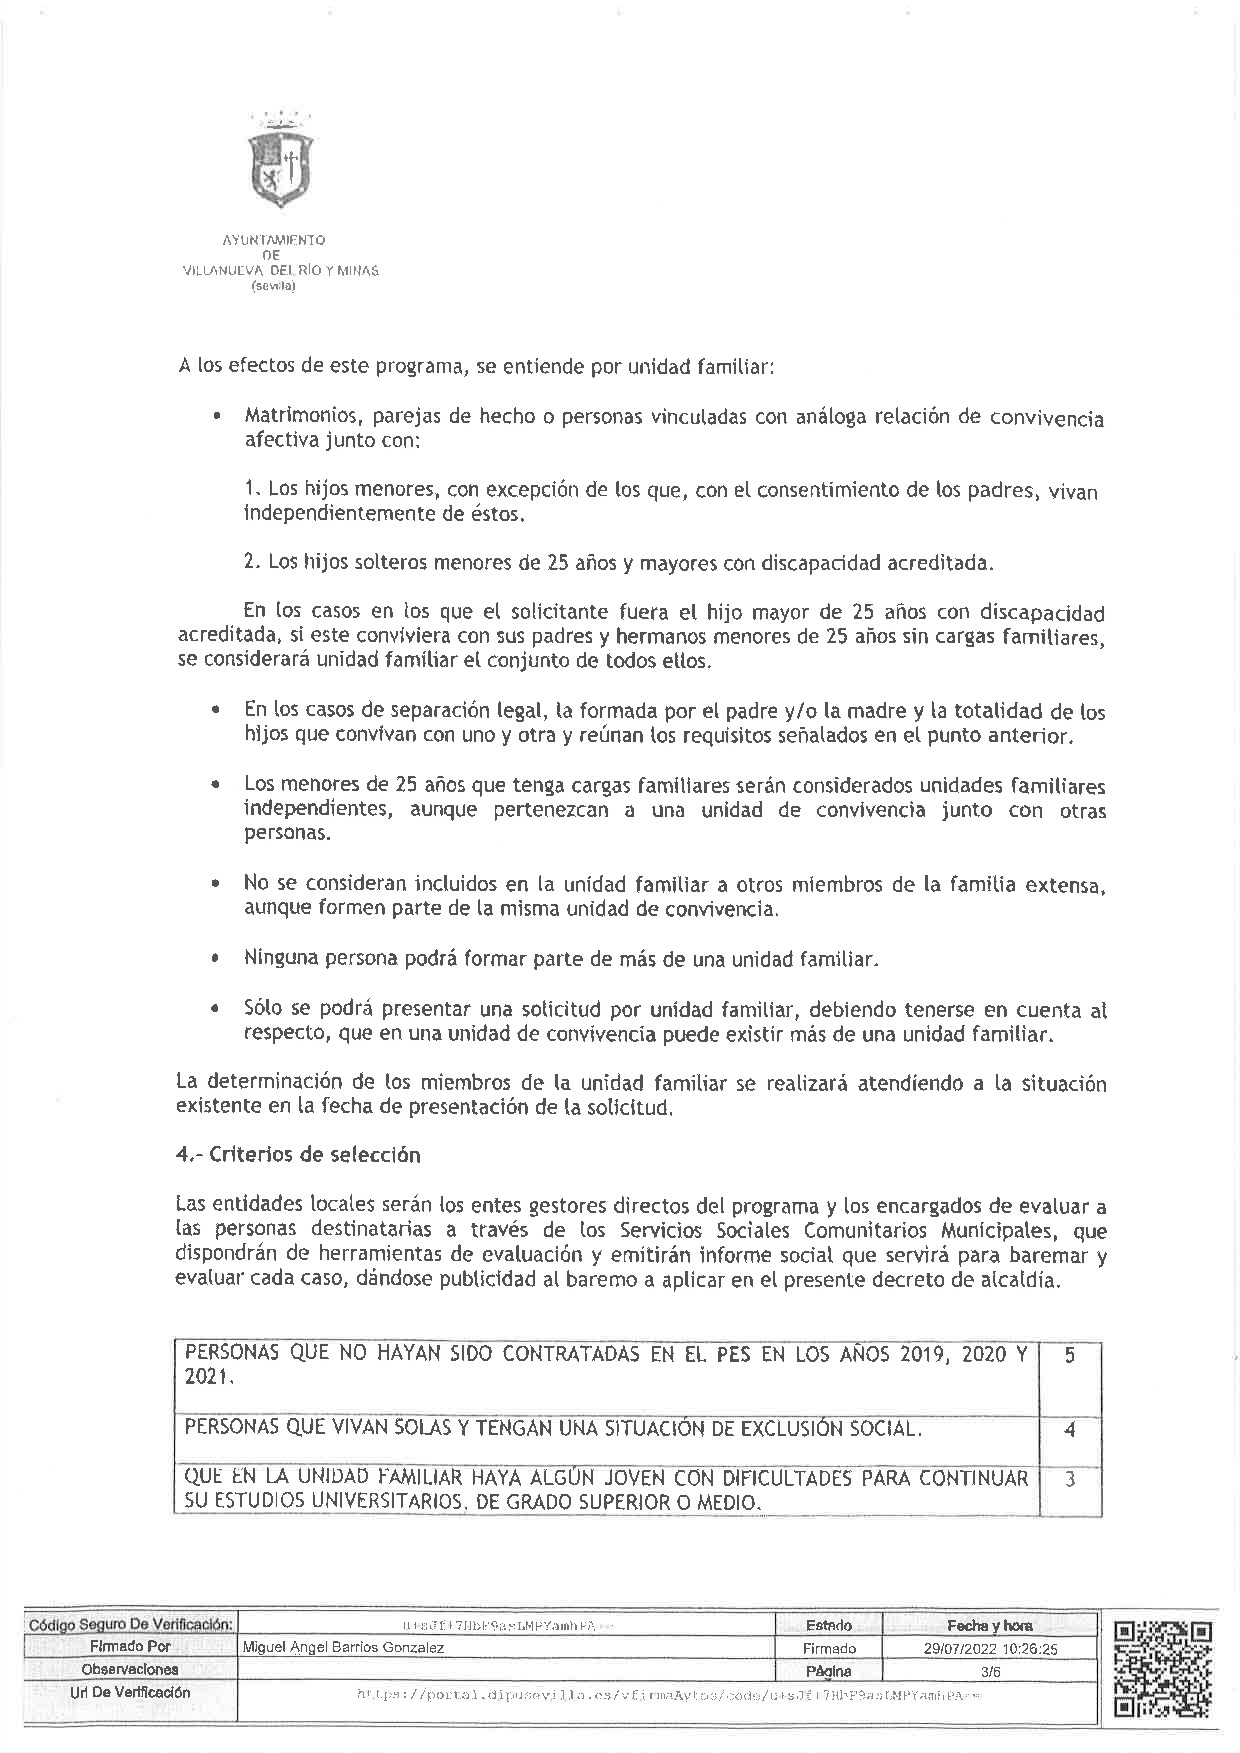 DECRETO DE ALCALDIA Nº 149. BASES PROGRAMA PREVENCION DE LA EXCLUSION SOCIAL, DEL PLAN ACTUA-003